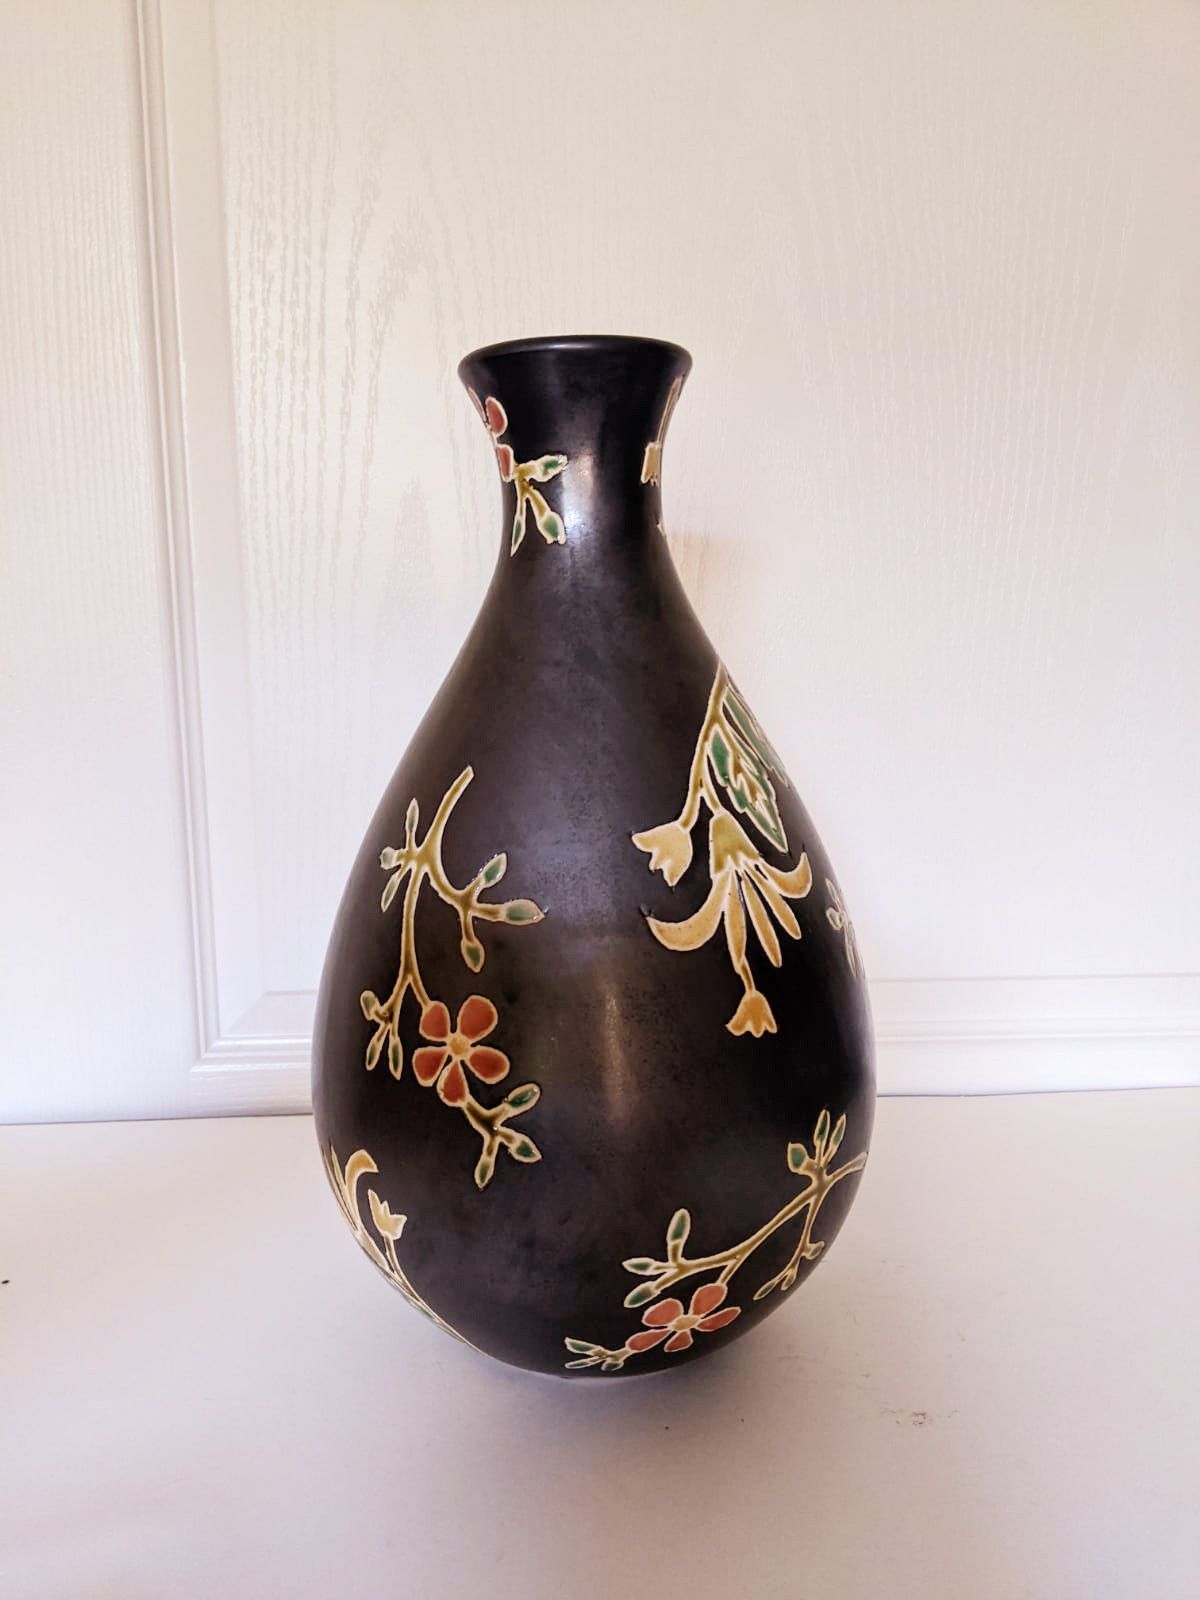 15" Tall Ceramic Flower Vase for Home Decor